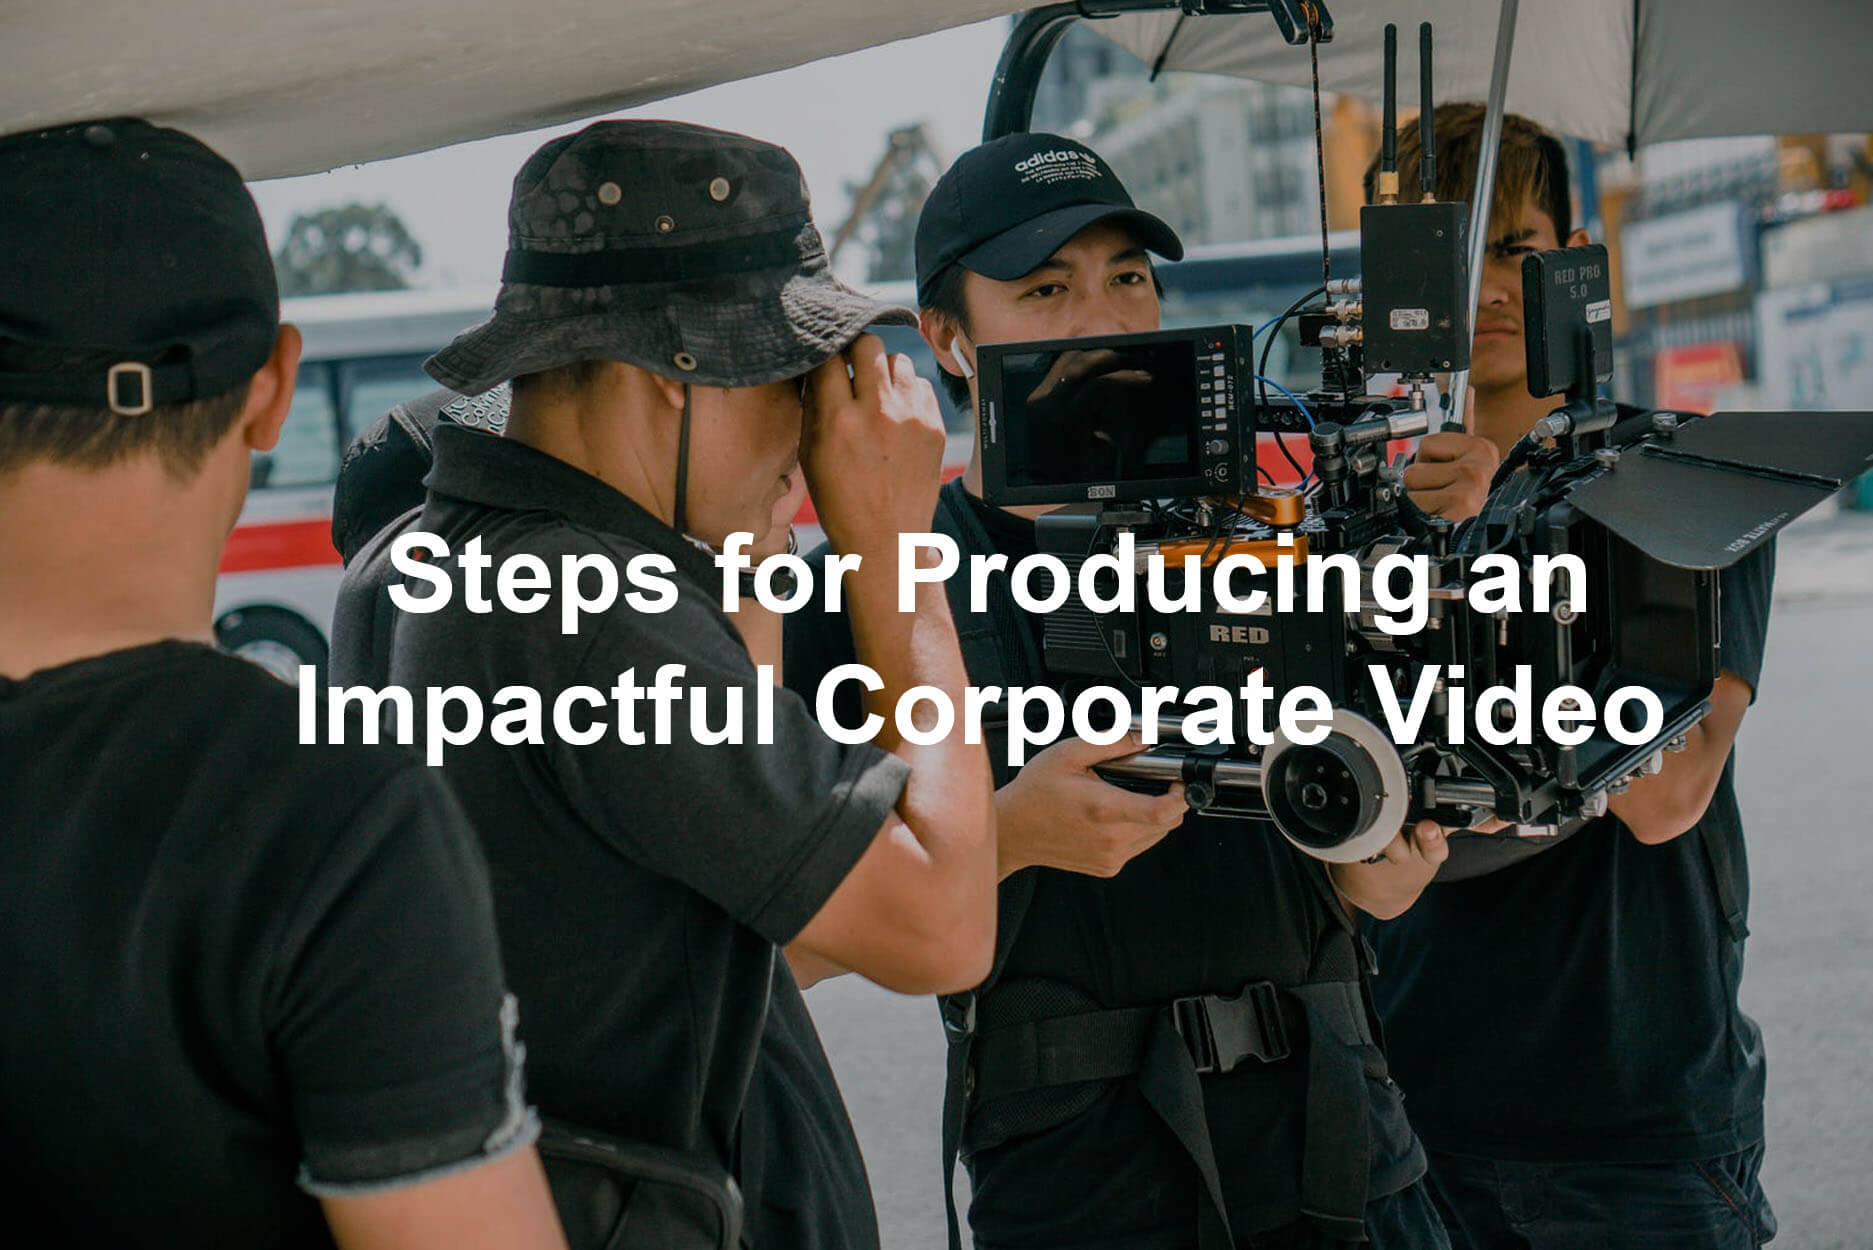 Impactful Corporate Video